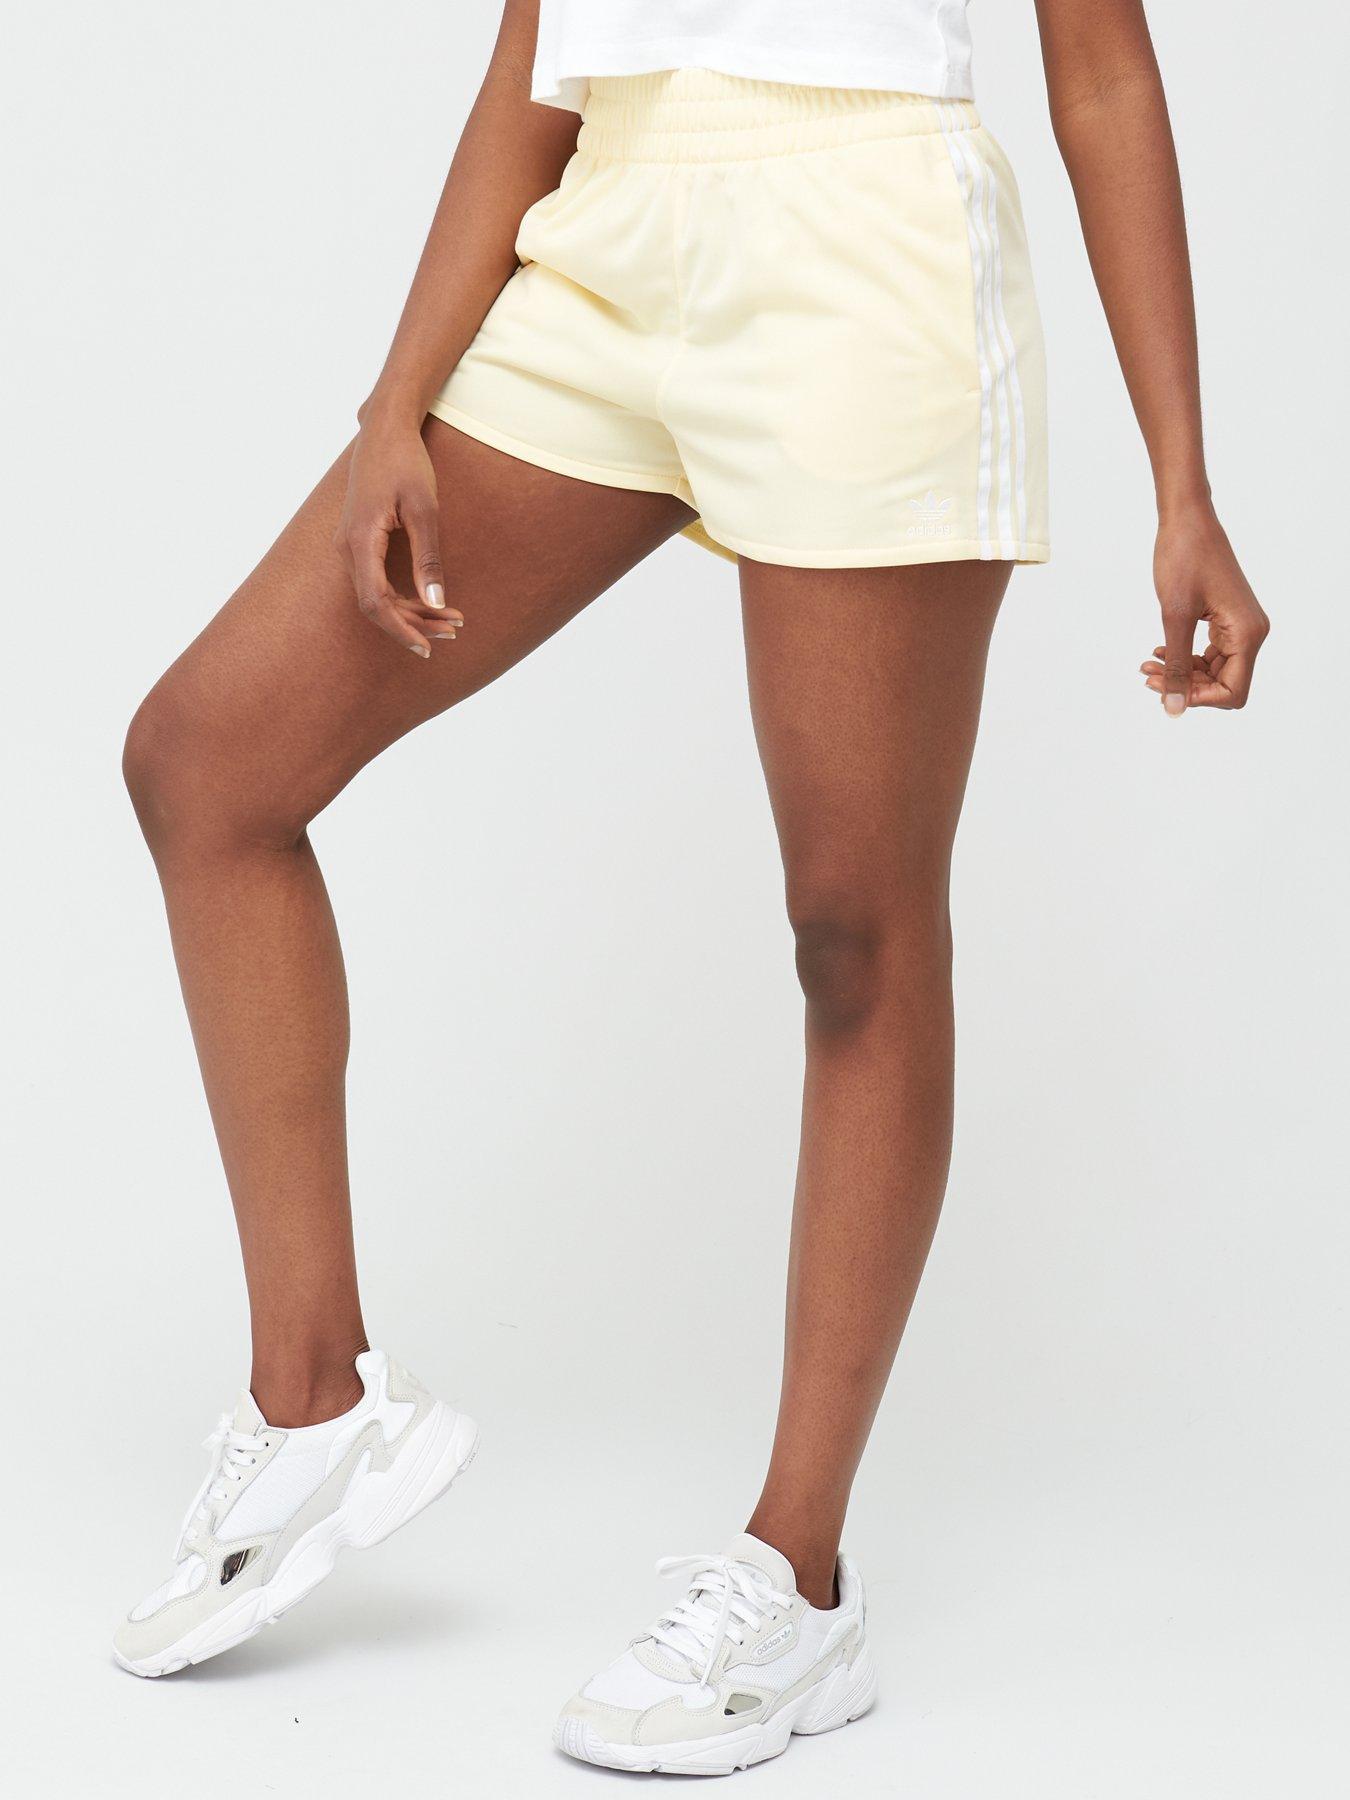 yellow adidas shorts womens